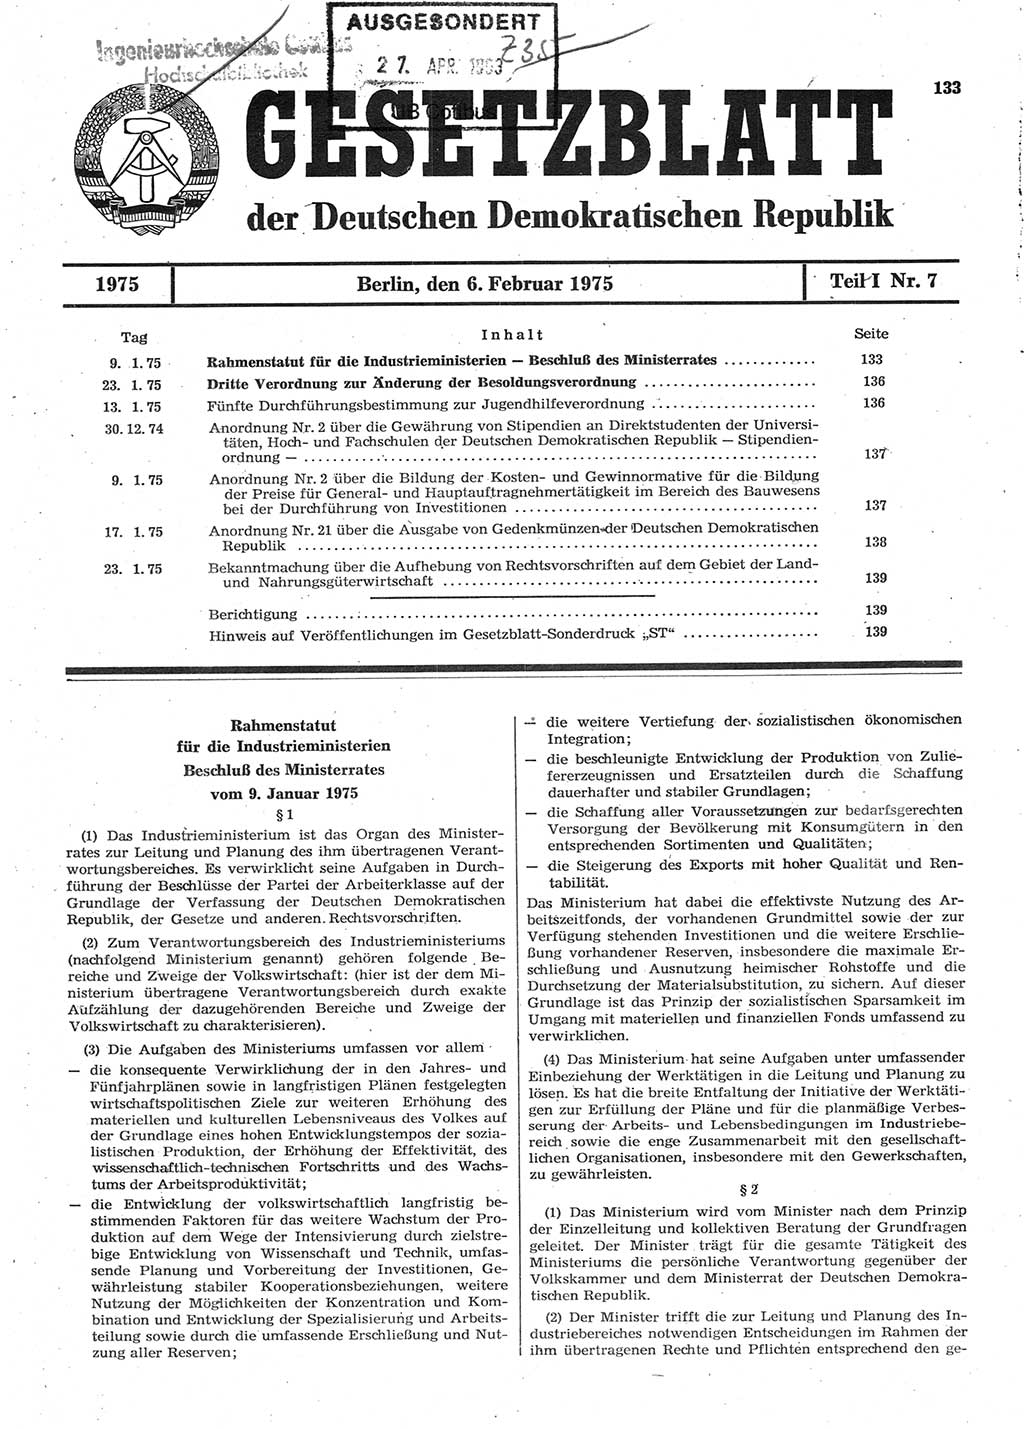 Gesetzblatt (GBl.) der Deutschen Demokratischen Republik (DDR) Teil Ⅰ 1975, Seite 133 (GBl. DDR Ⅰ 1975, S. 133)